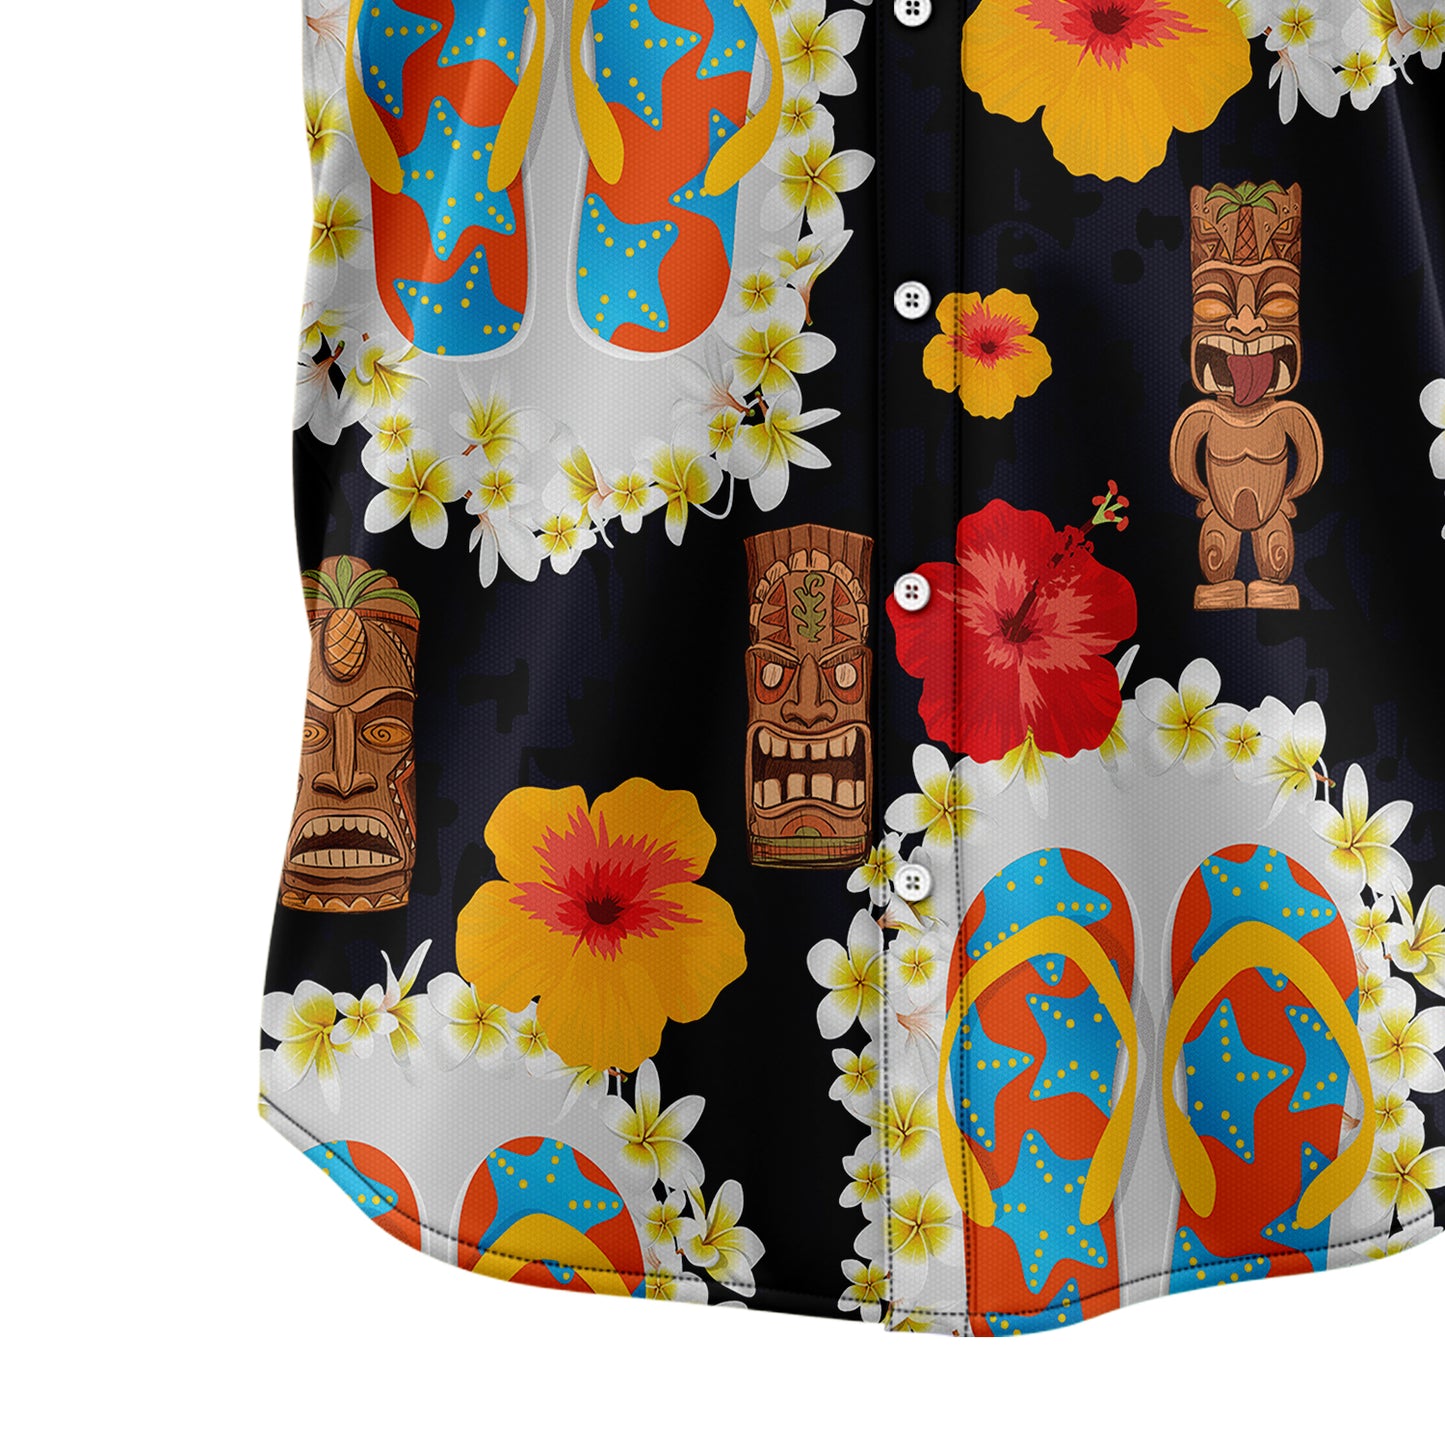 Flip-flops Tiki Pattern T1307 Hawaiian Shirt